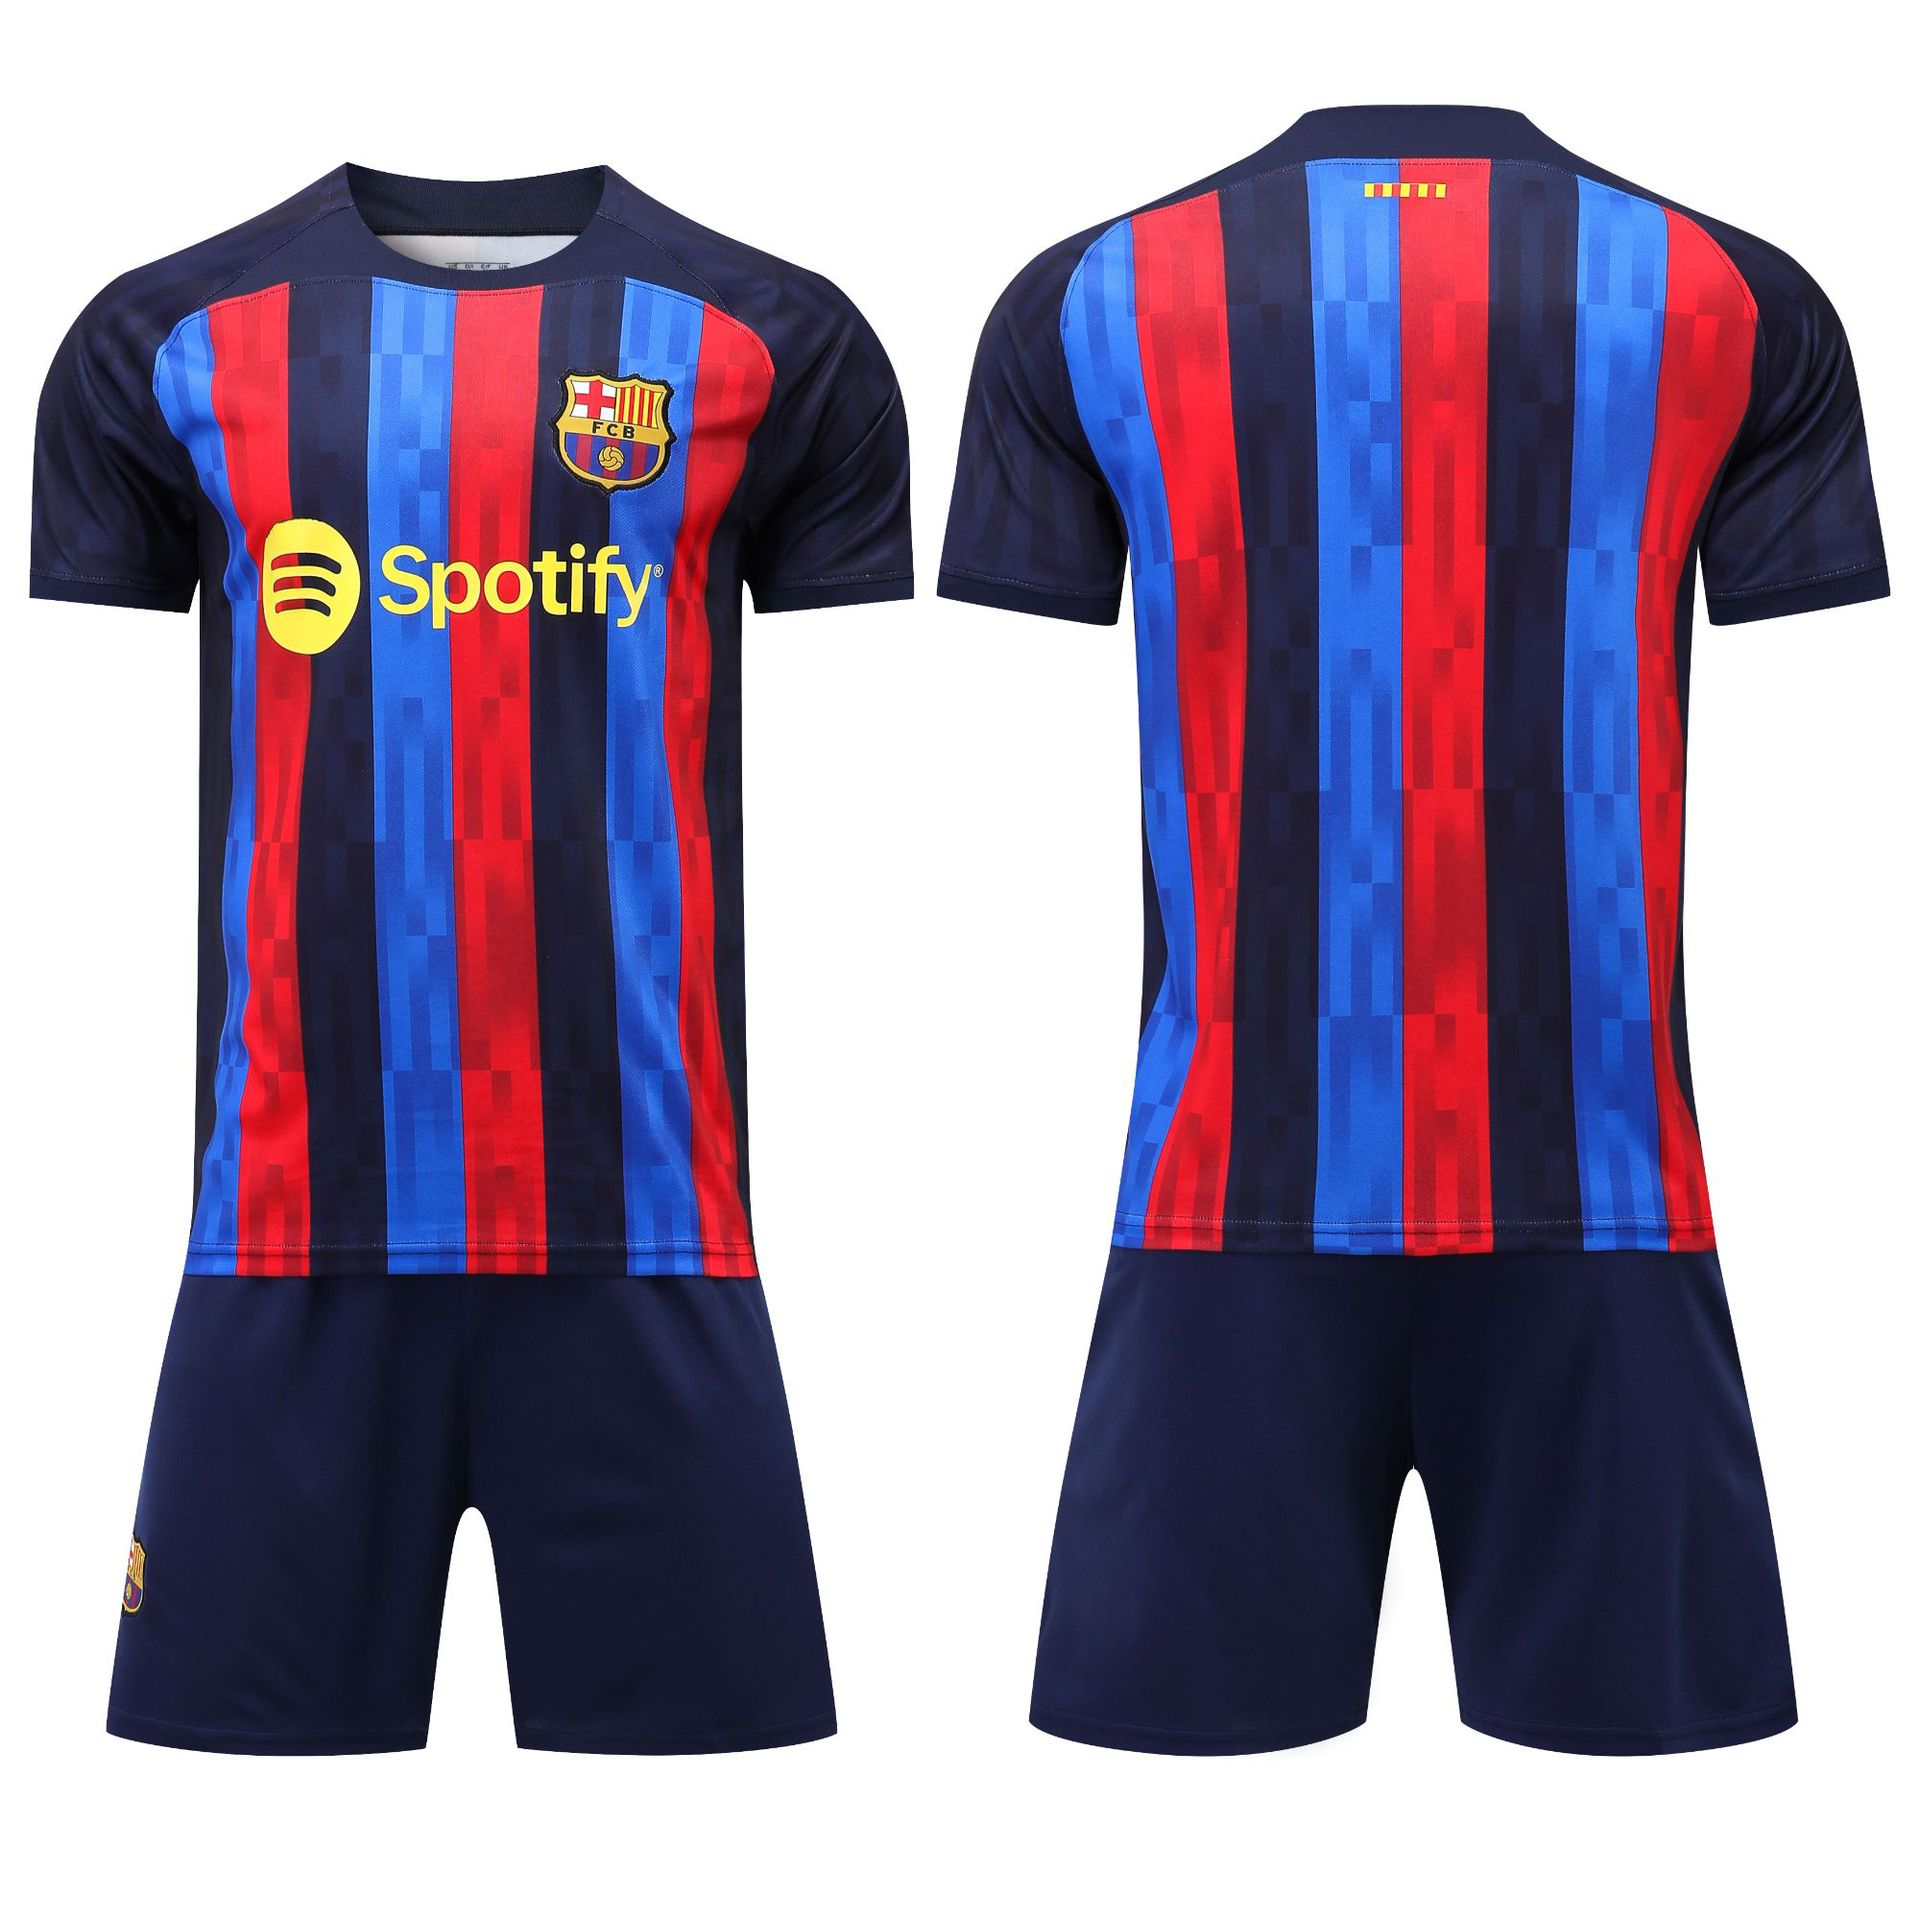 Les 4 nouveaux maillots de foot FC Barcelone 2021